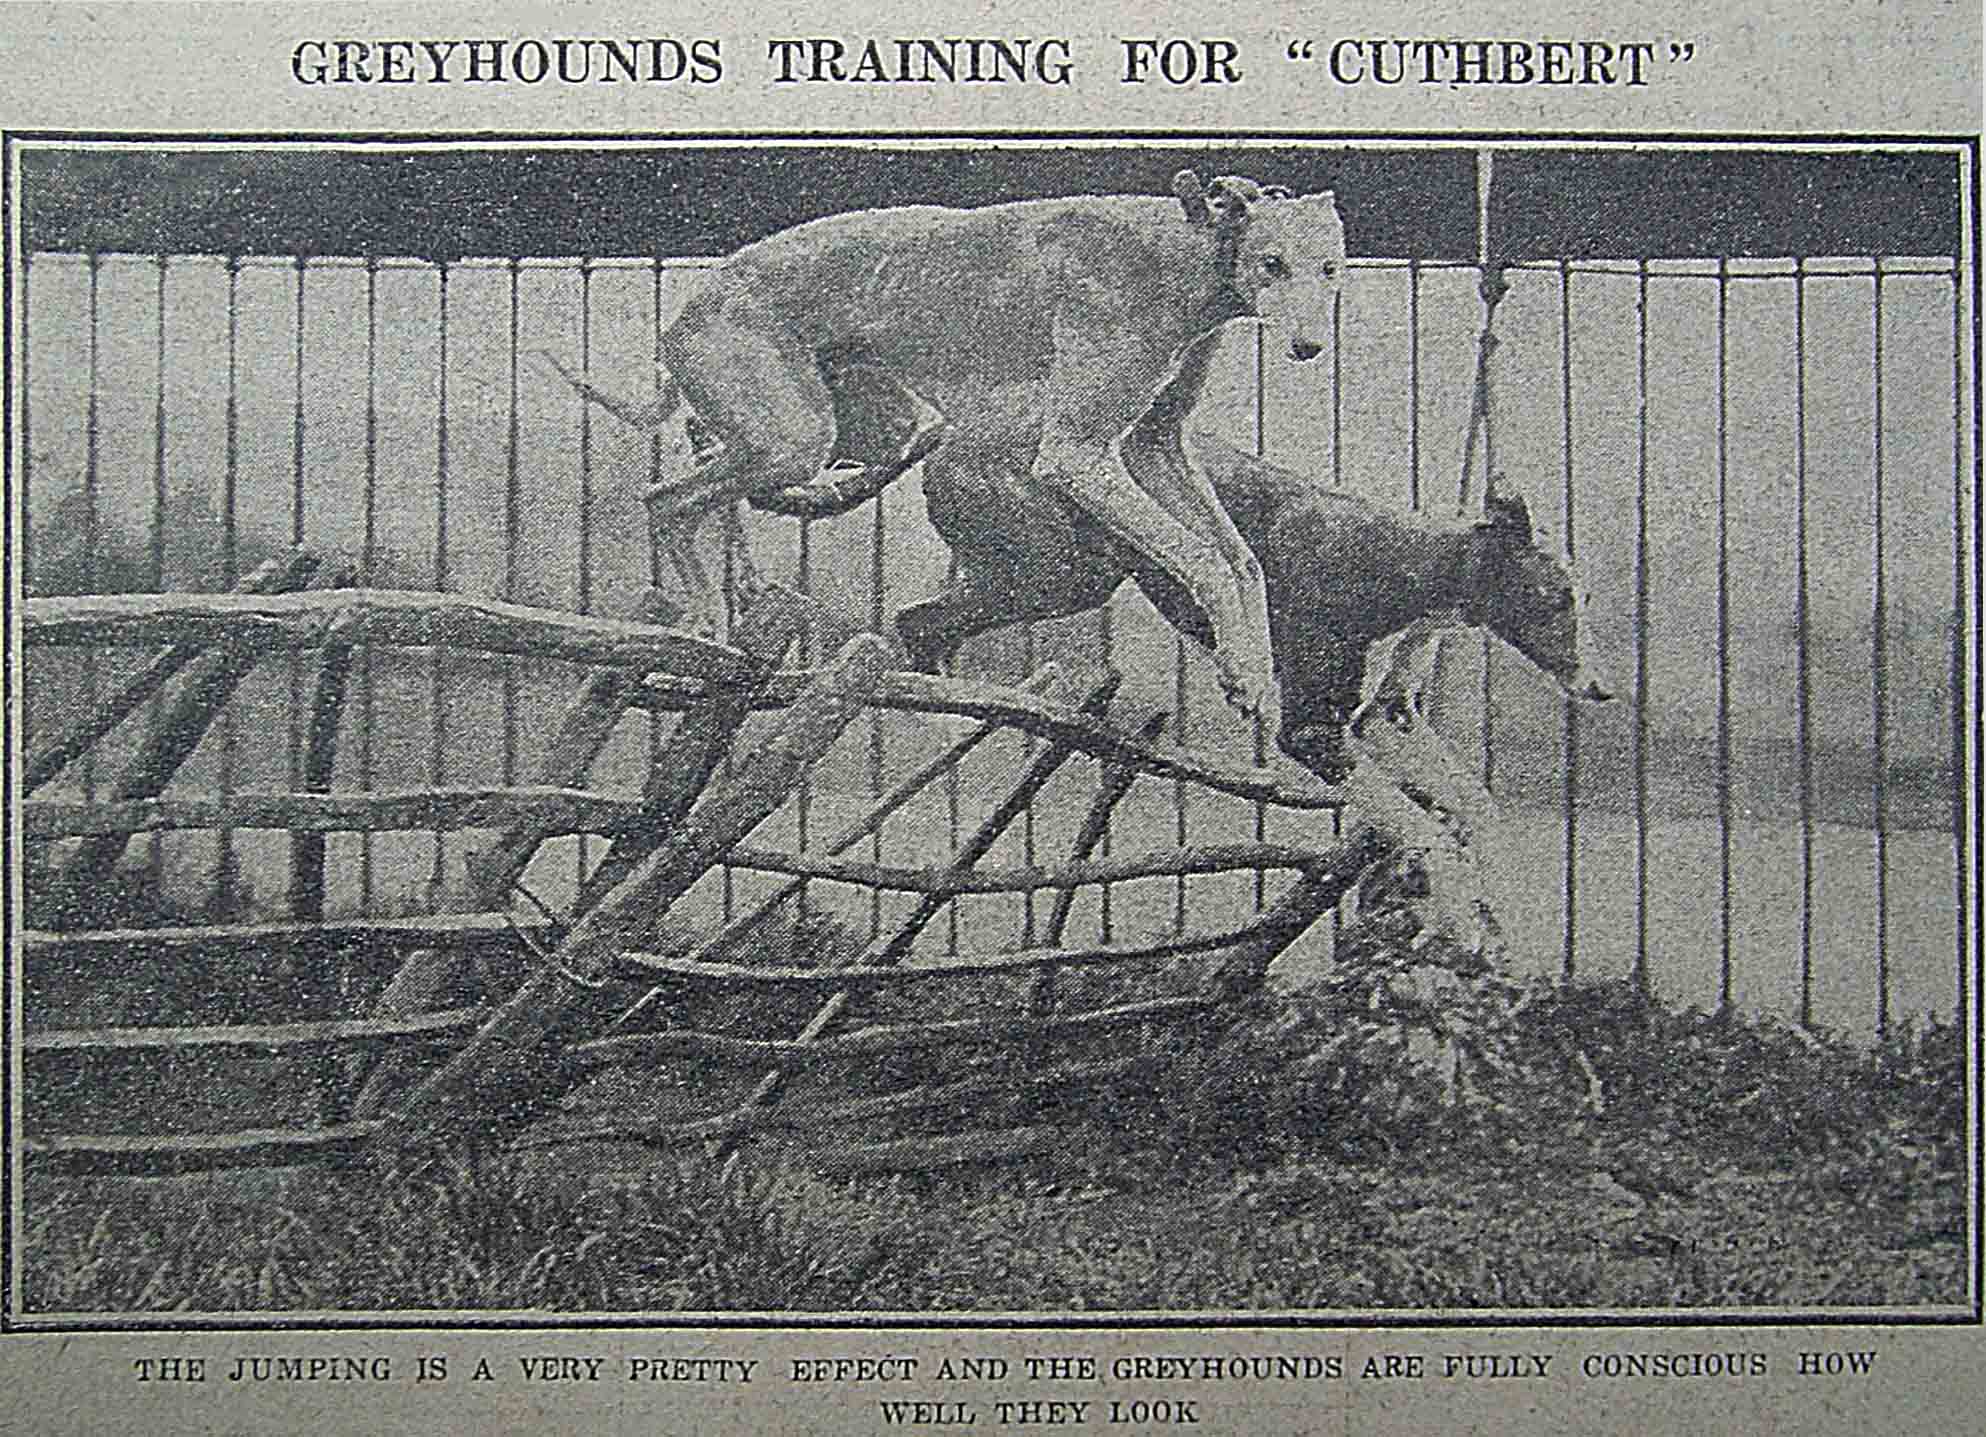 靈緹犬的身形瘦長，輕輕一躍，就優雅地跳過障礙。 資料來源│North China Daily News, 28 May 1928, p.12